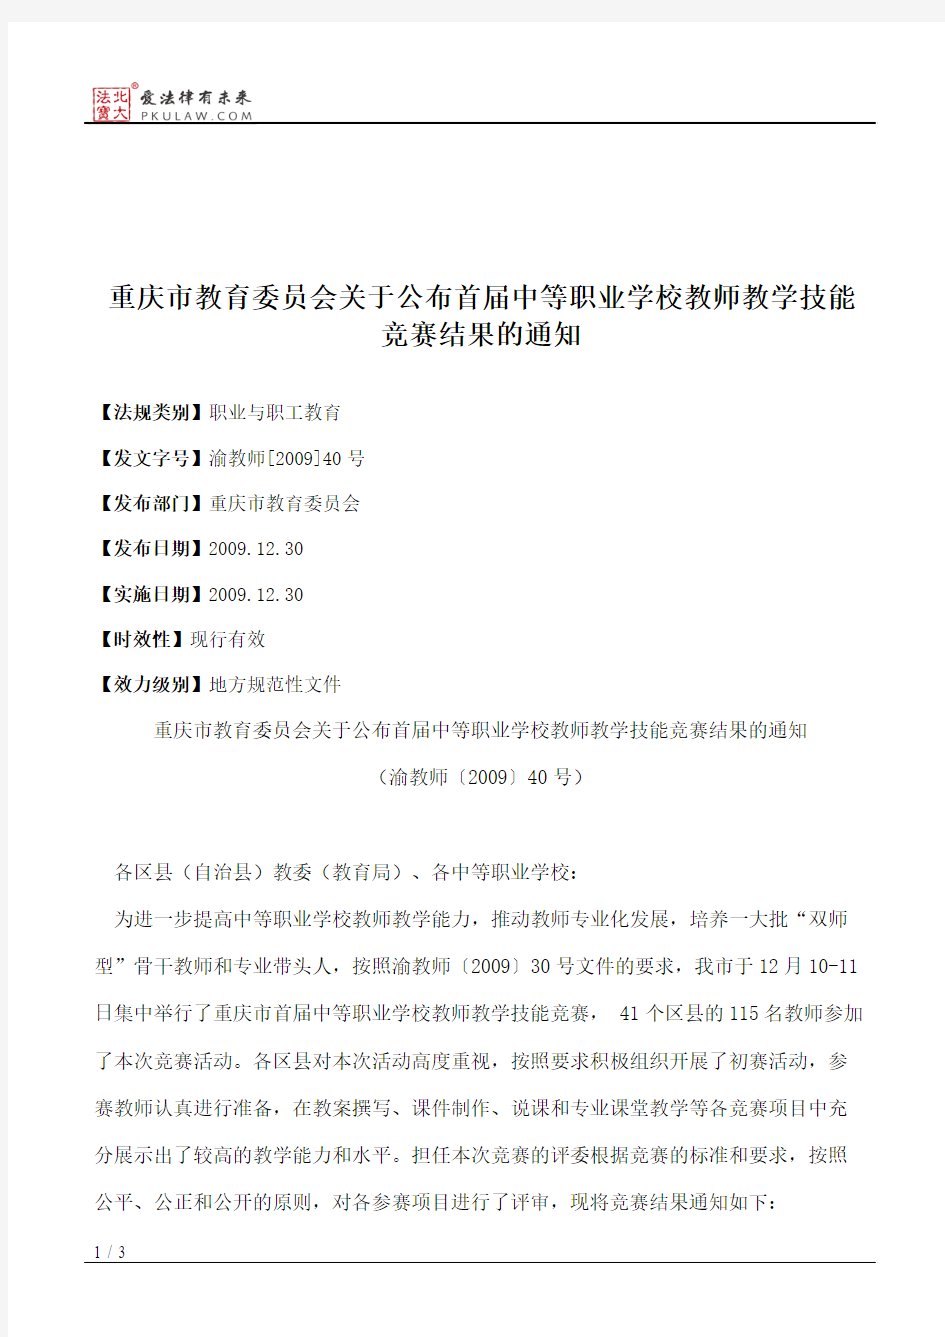 重庆市教育委员会关于公布首届中等职业学校教师教学技能竞赛结果的通知